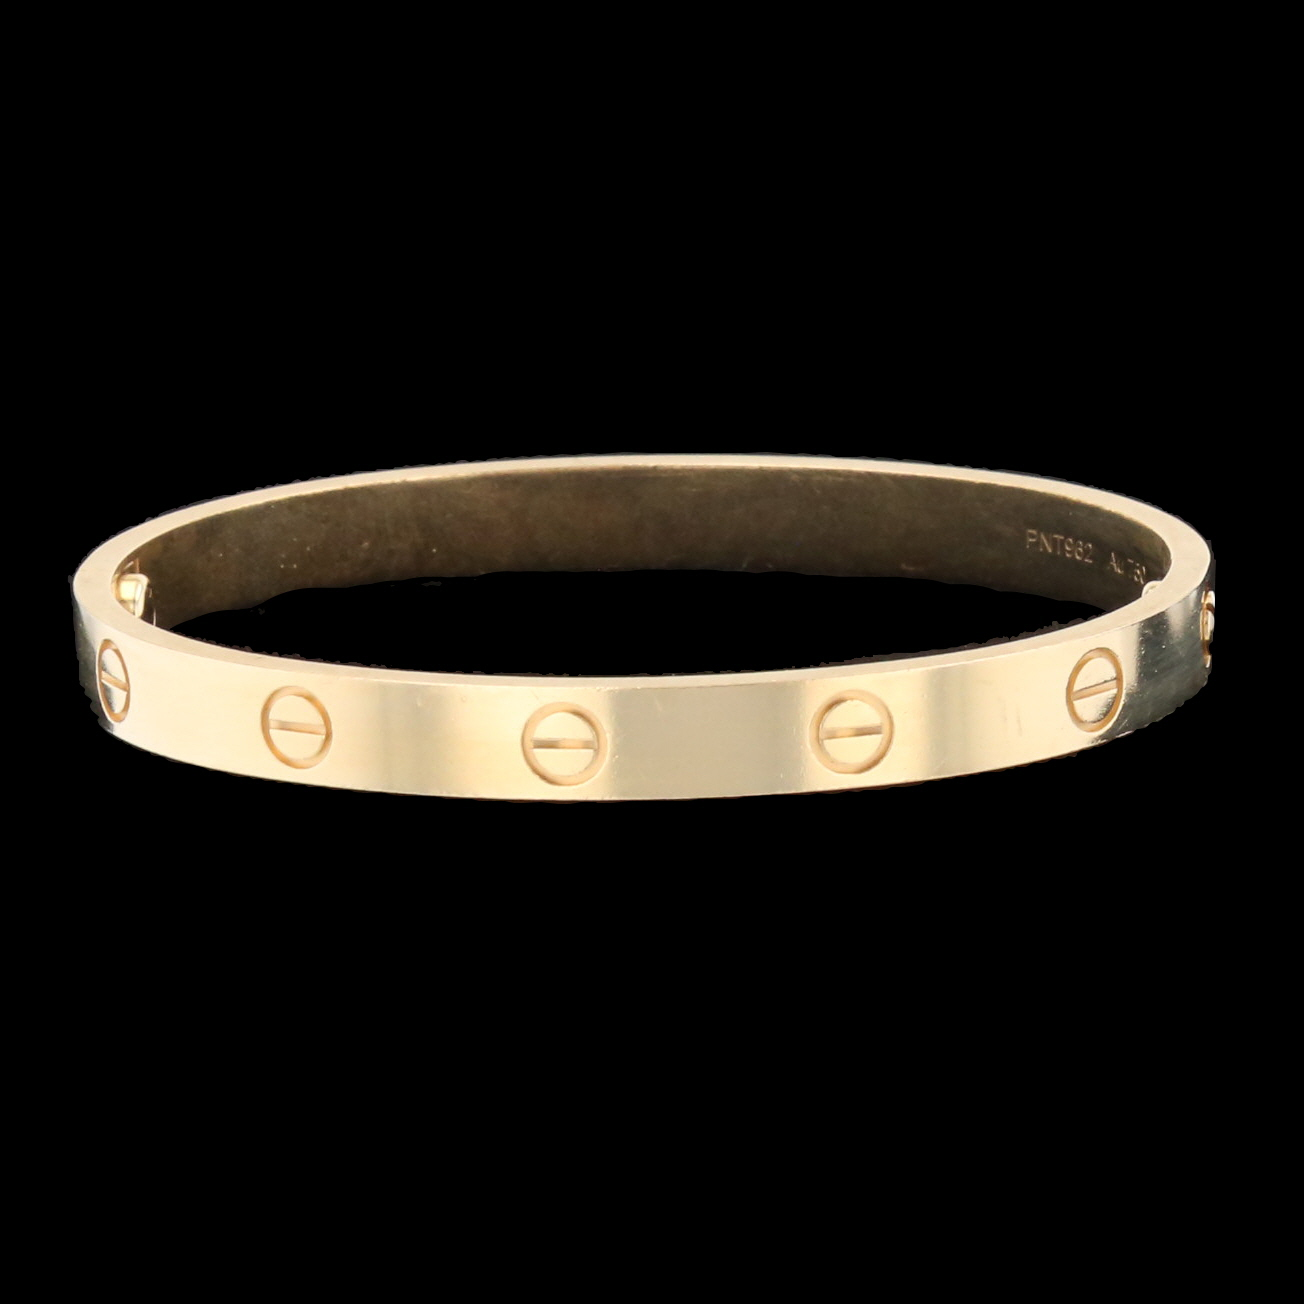 Buy University Trendz Key Lock Bracelet for Couples Golden Heart Shape  Stainless Steel Pendant Set, Necklace Set for Girls, Boys, Lovers Men and  Women (Gold) at Amazon.in